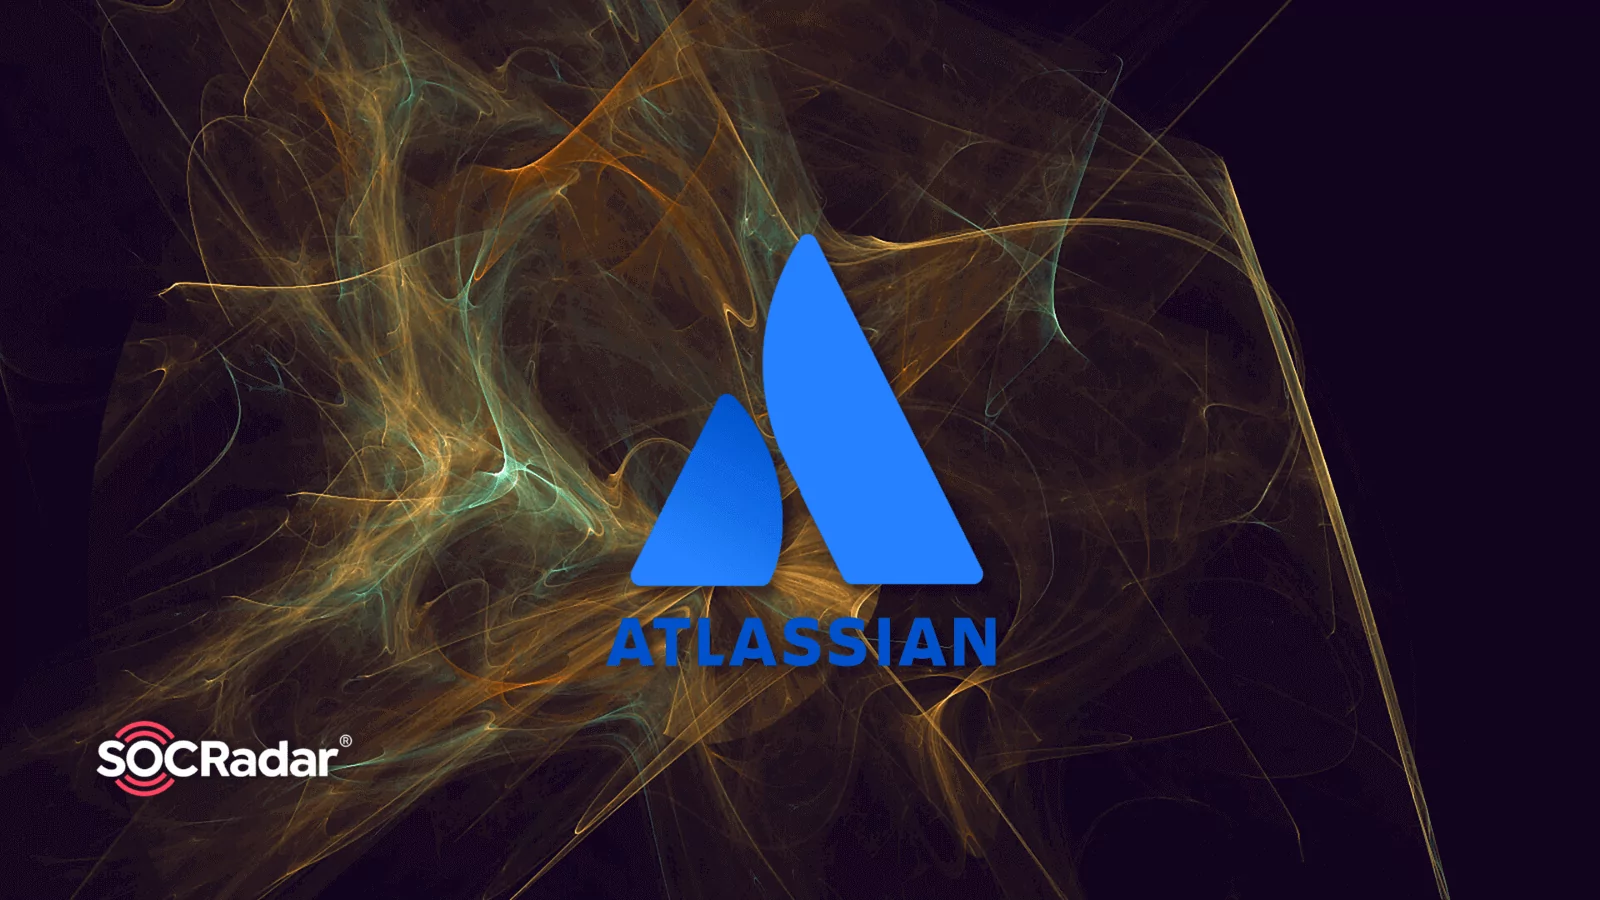 SOCRadar® Cyber Intelligence Inc. | Atlassian Hacked: SiegedSec Hacker Group Leaks Company's Data